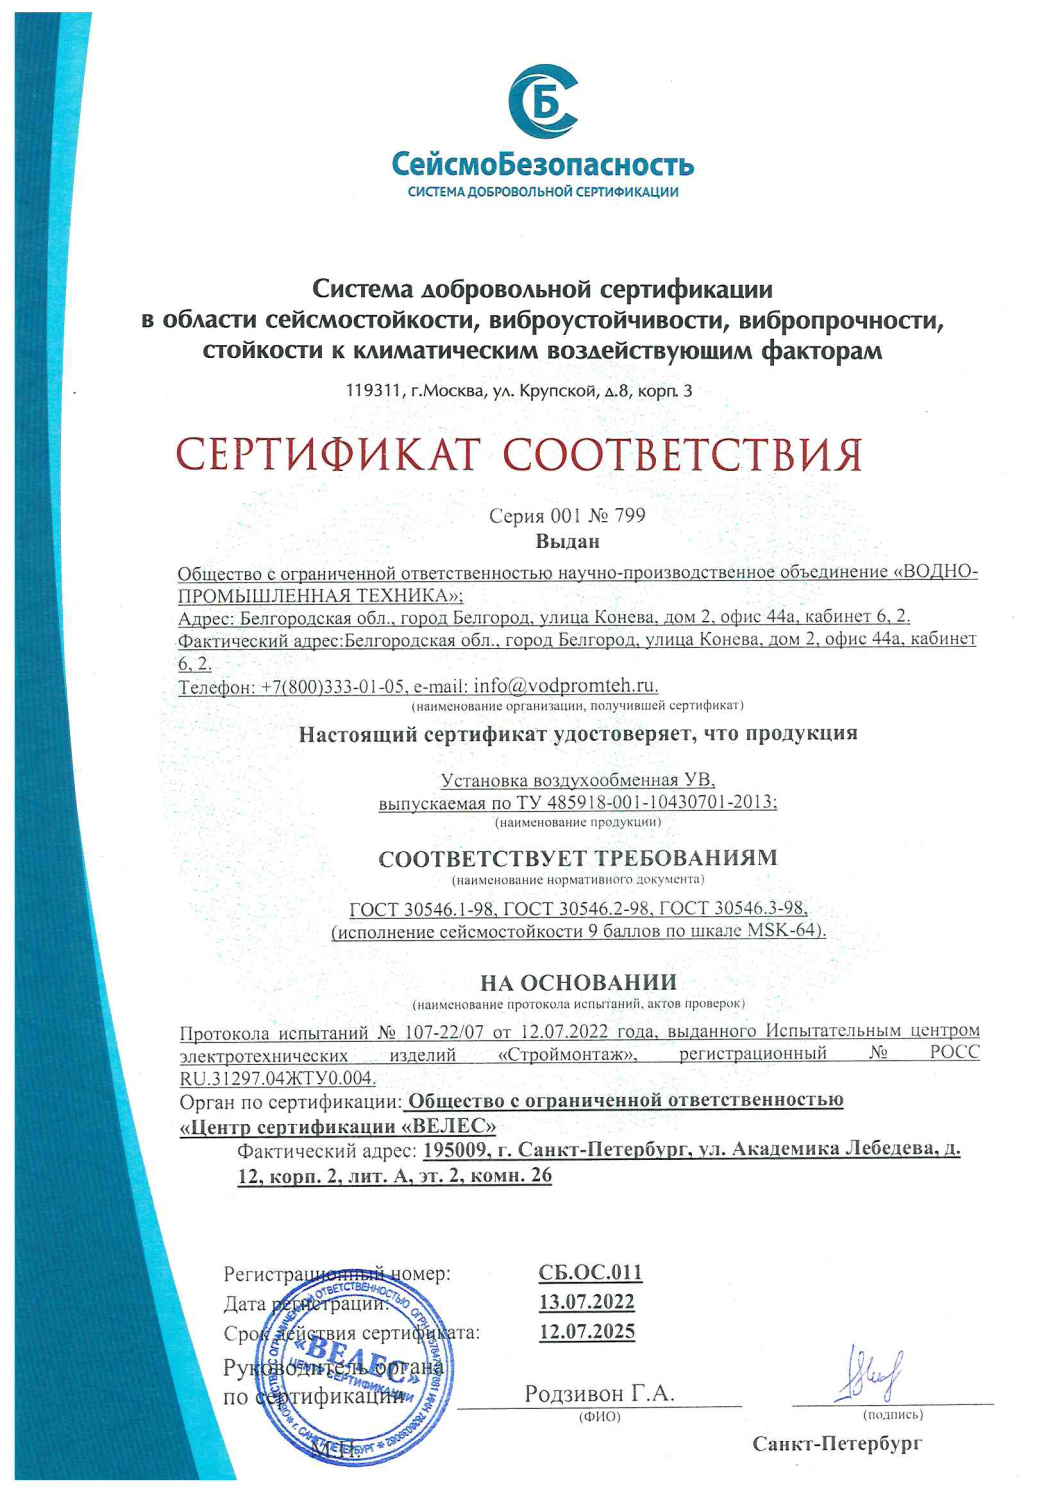 Сертификат Сейсмостойоксти